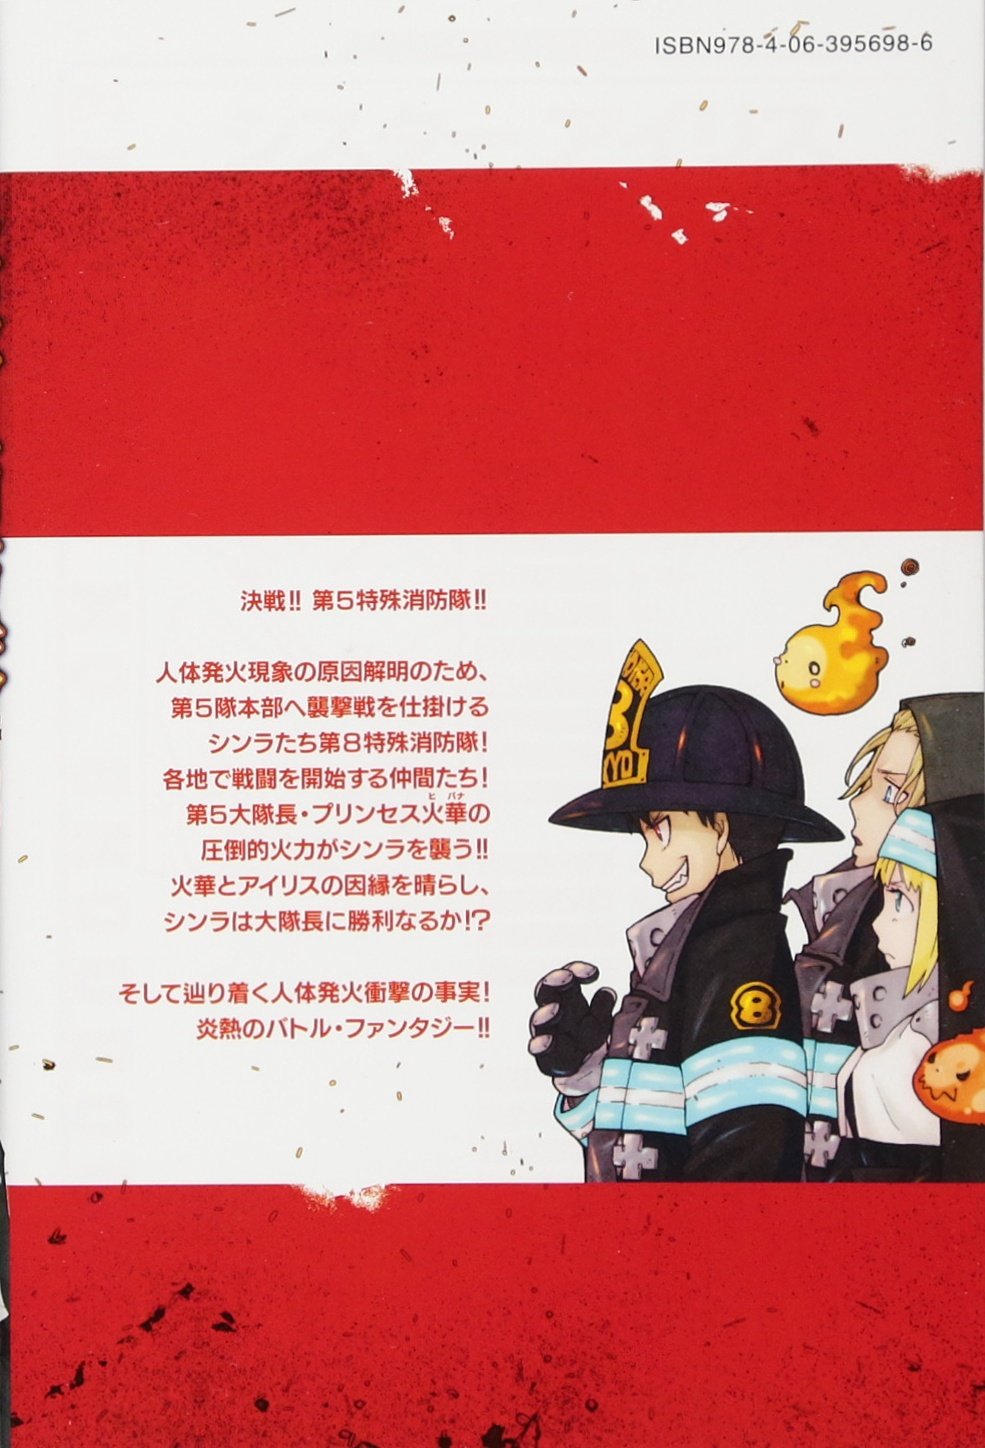 Fire Force Volume 3 (Enen no Shouboutai) - Manga Store 